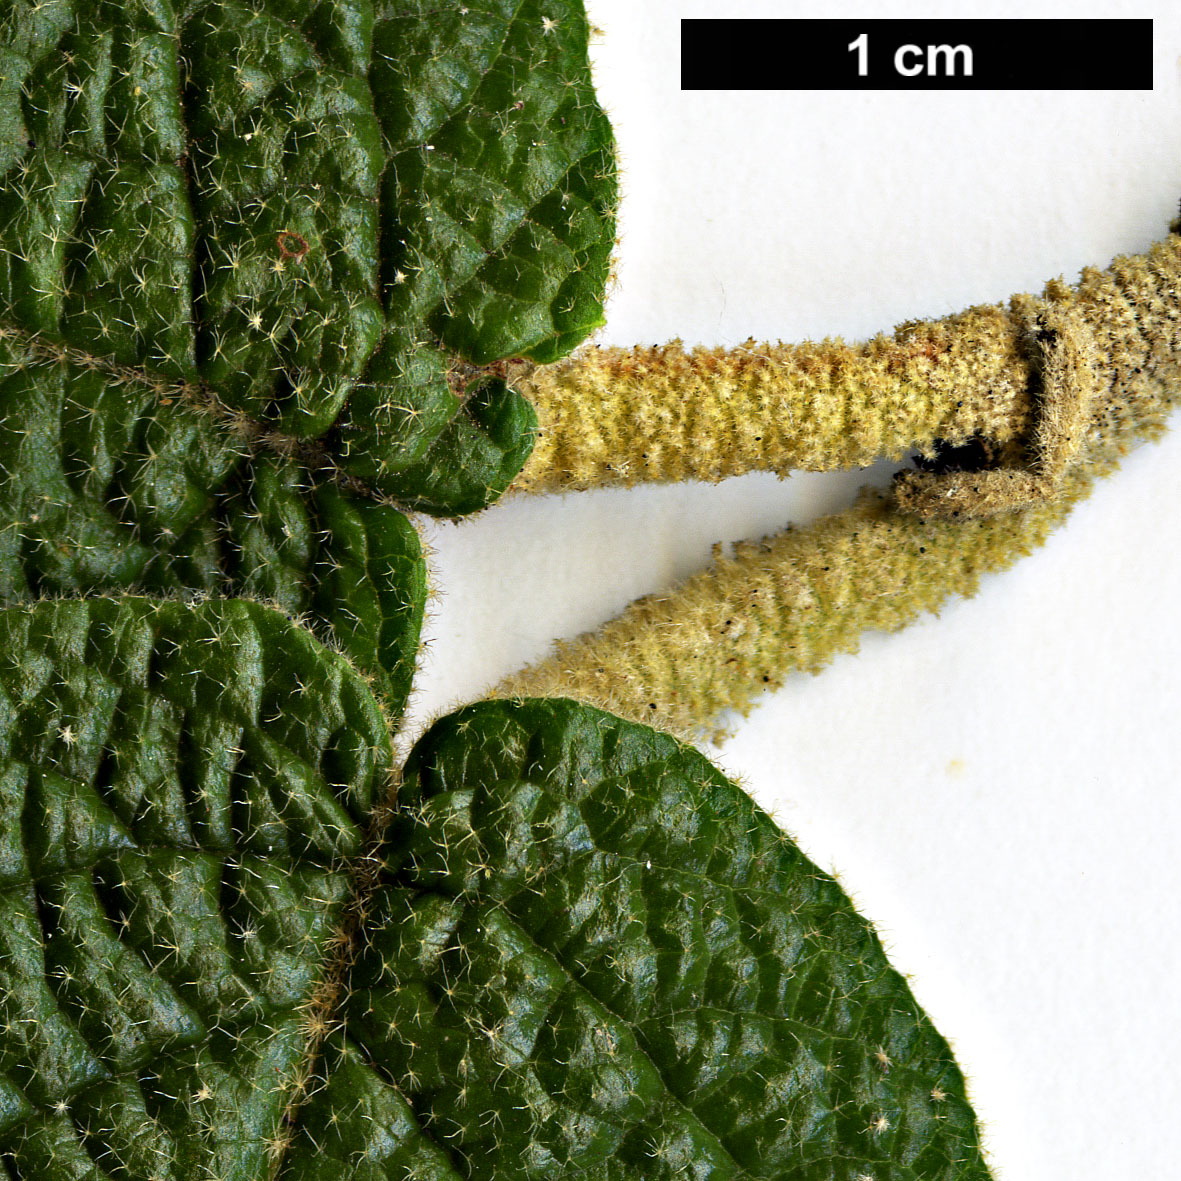 High resolution image: Family: Adoxaceae - Genus: Viburnum - Taxon: ×rhytidophylloides (V.lantana × V.rhytidophyllum)